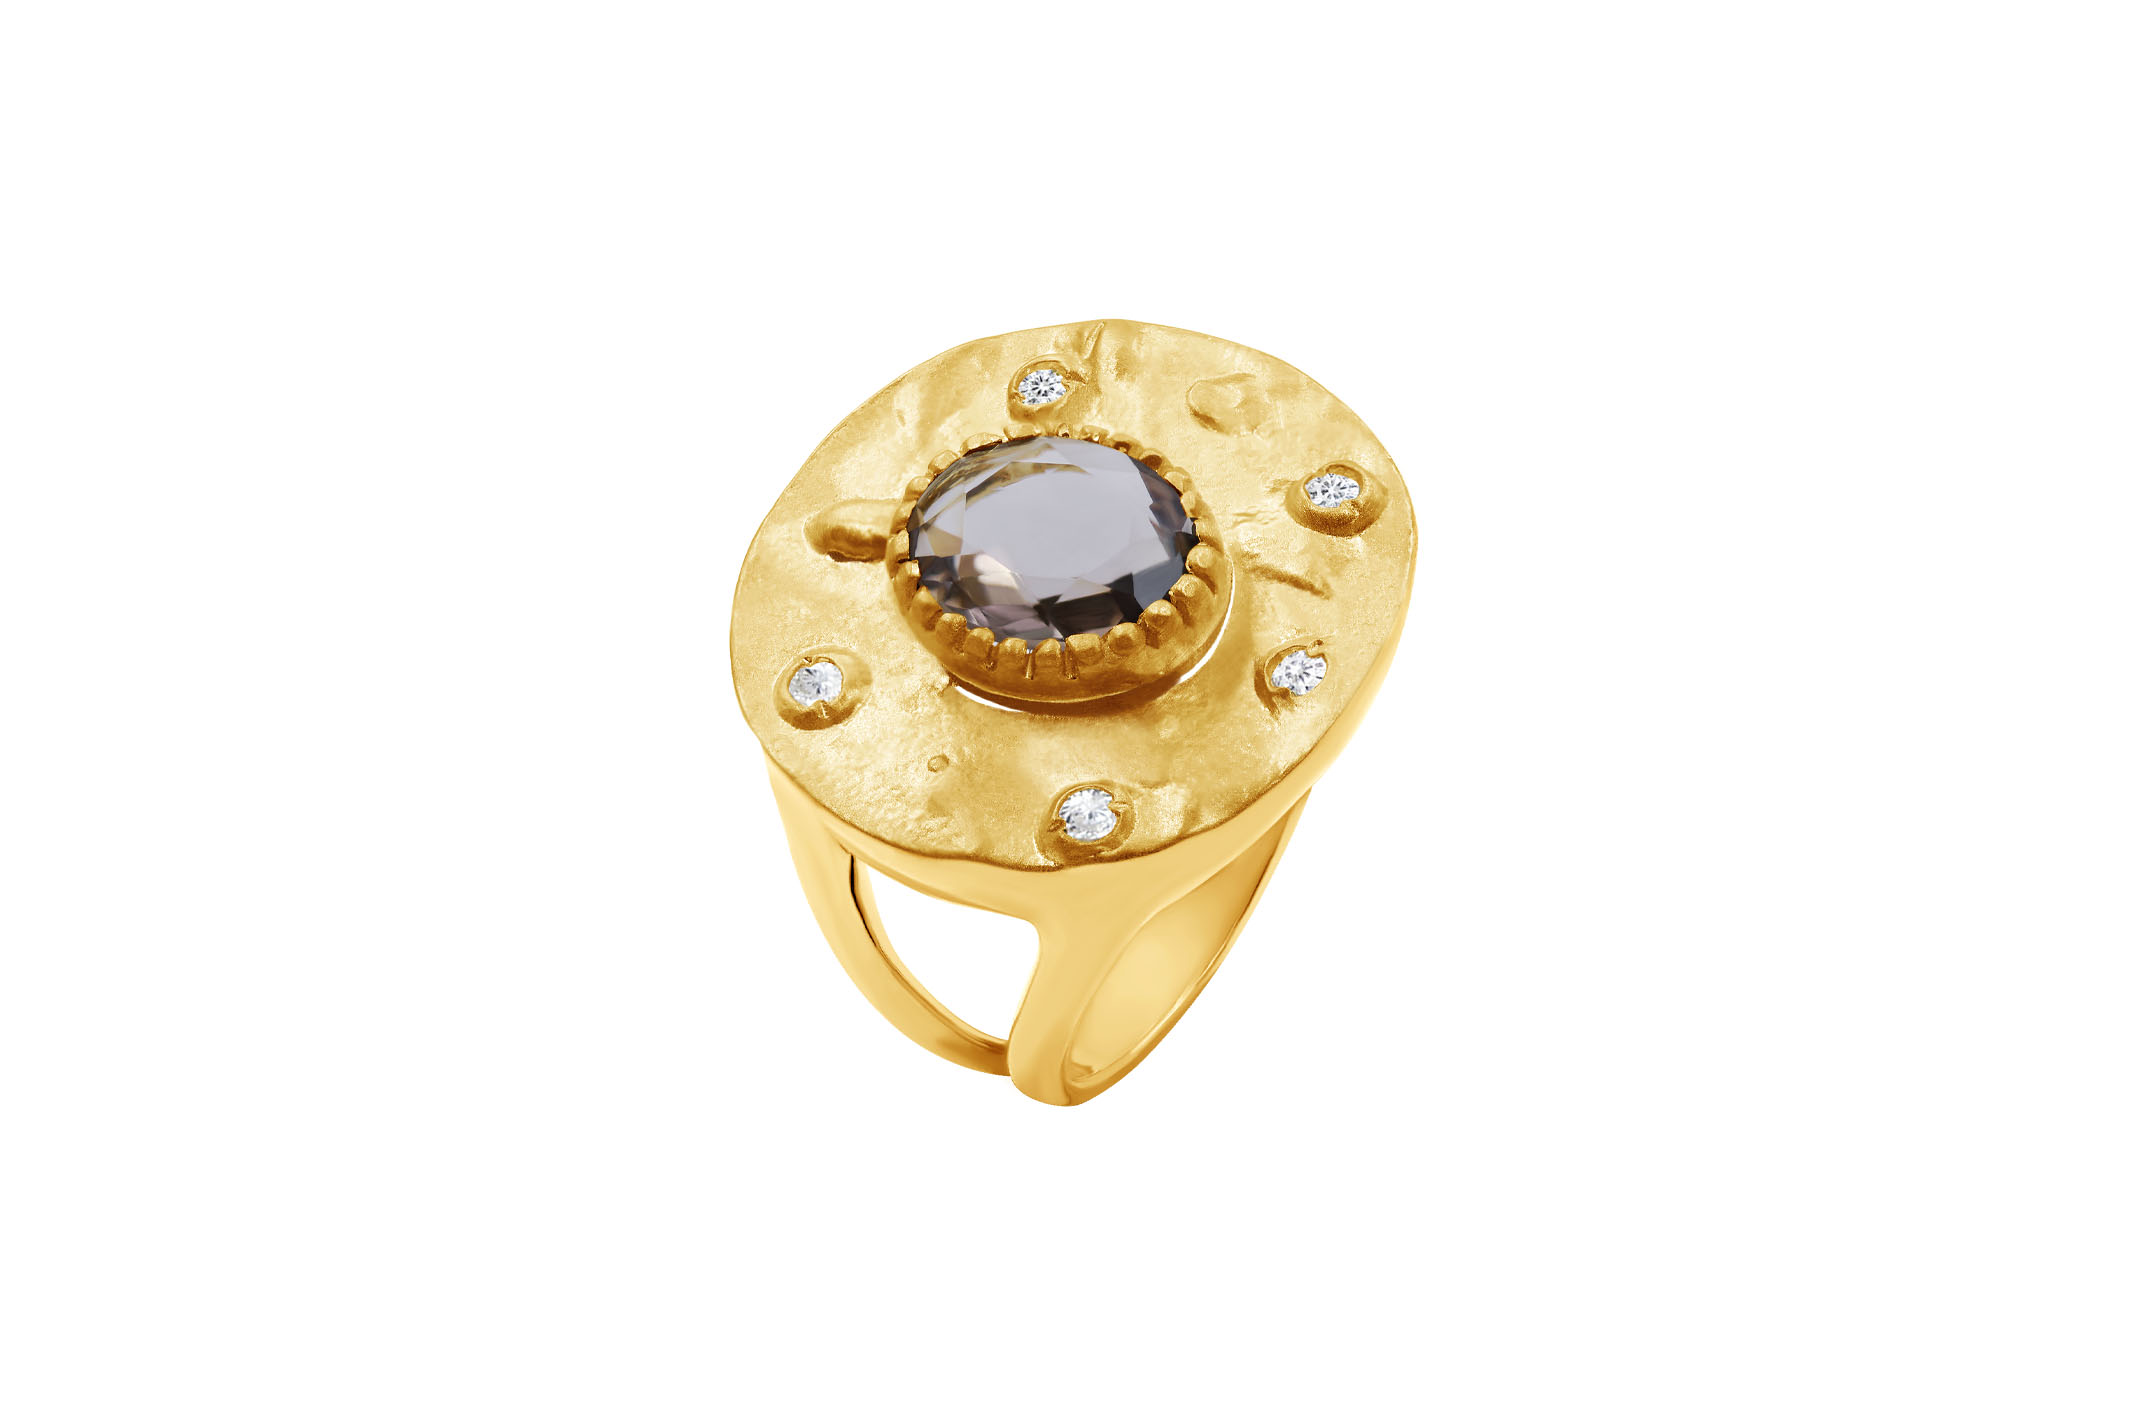 Joia: anel;Material: prata 925;Peso: 7.6 gr;Pedras: zircónias;Cor: amarelo;Género: mulher